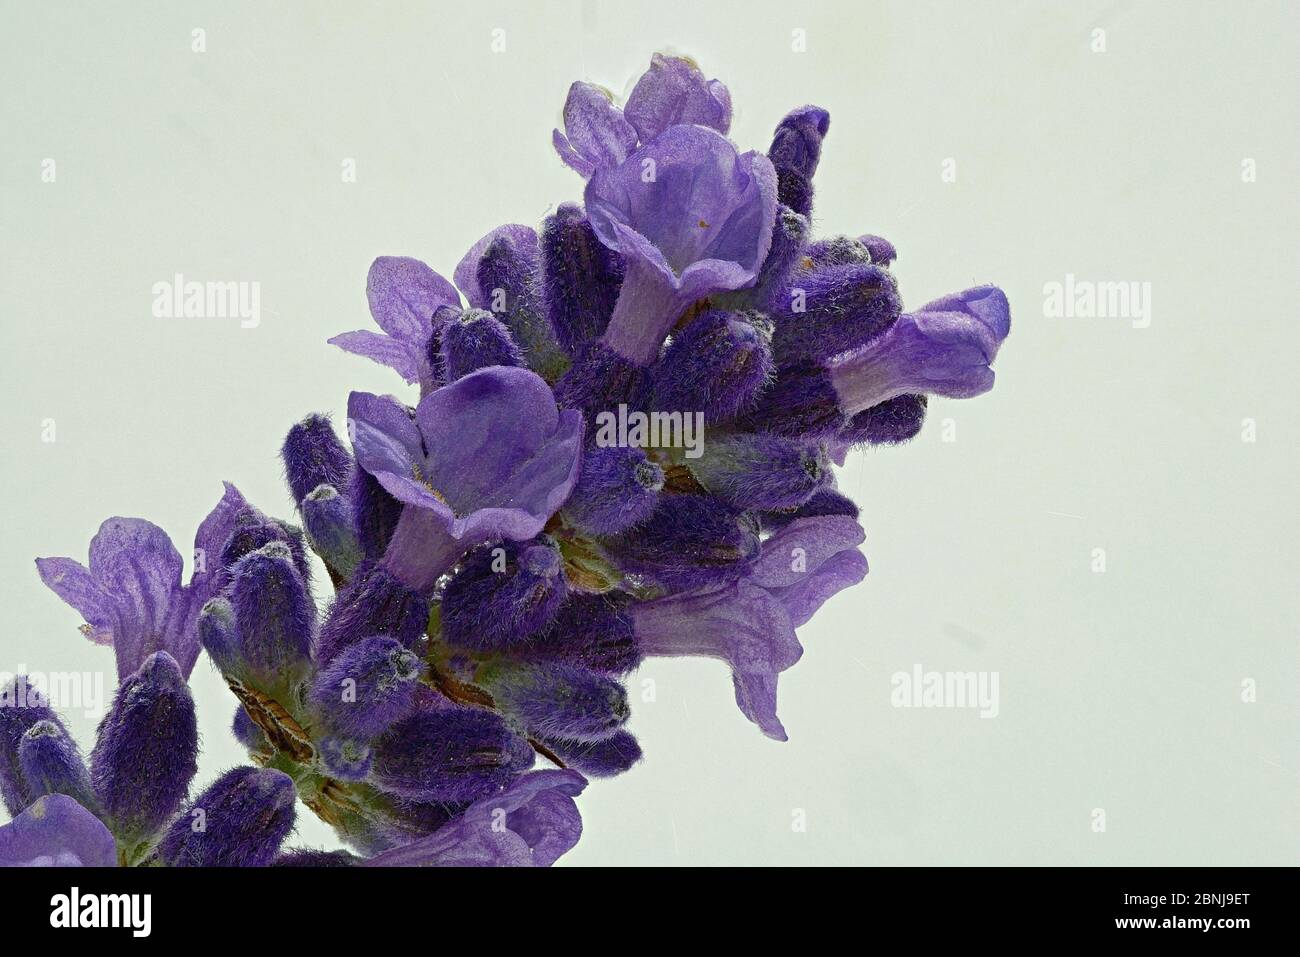 Schopavendel, Schmetterling Lavendel Latein Lavandula stoechas, stammt ursprünglich aus den sonnendurchfluteten Küstenregionen des Mittelmeers Stockfoto